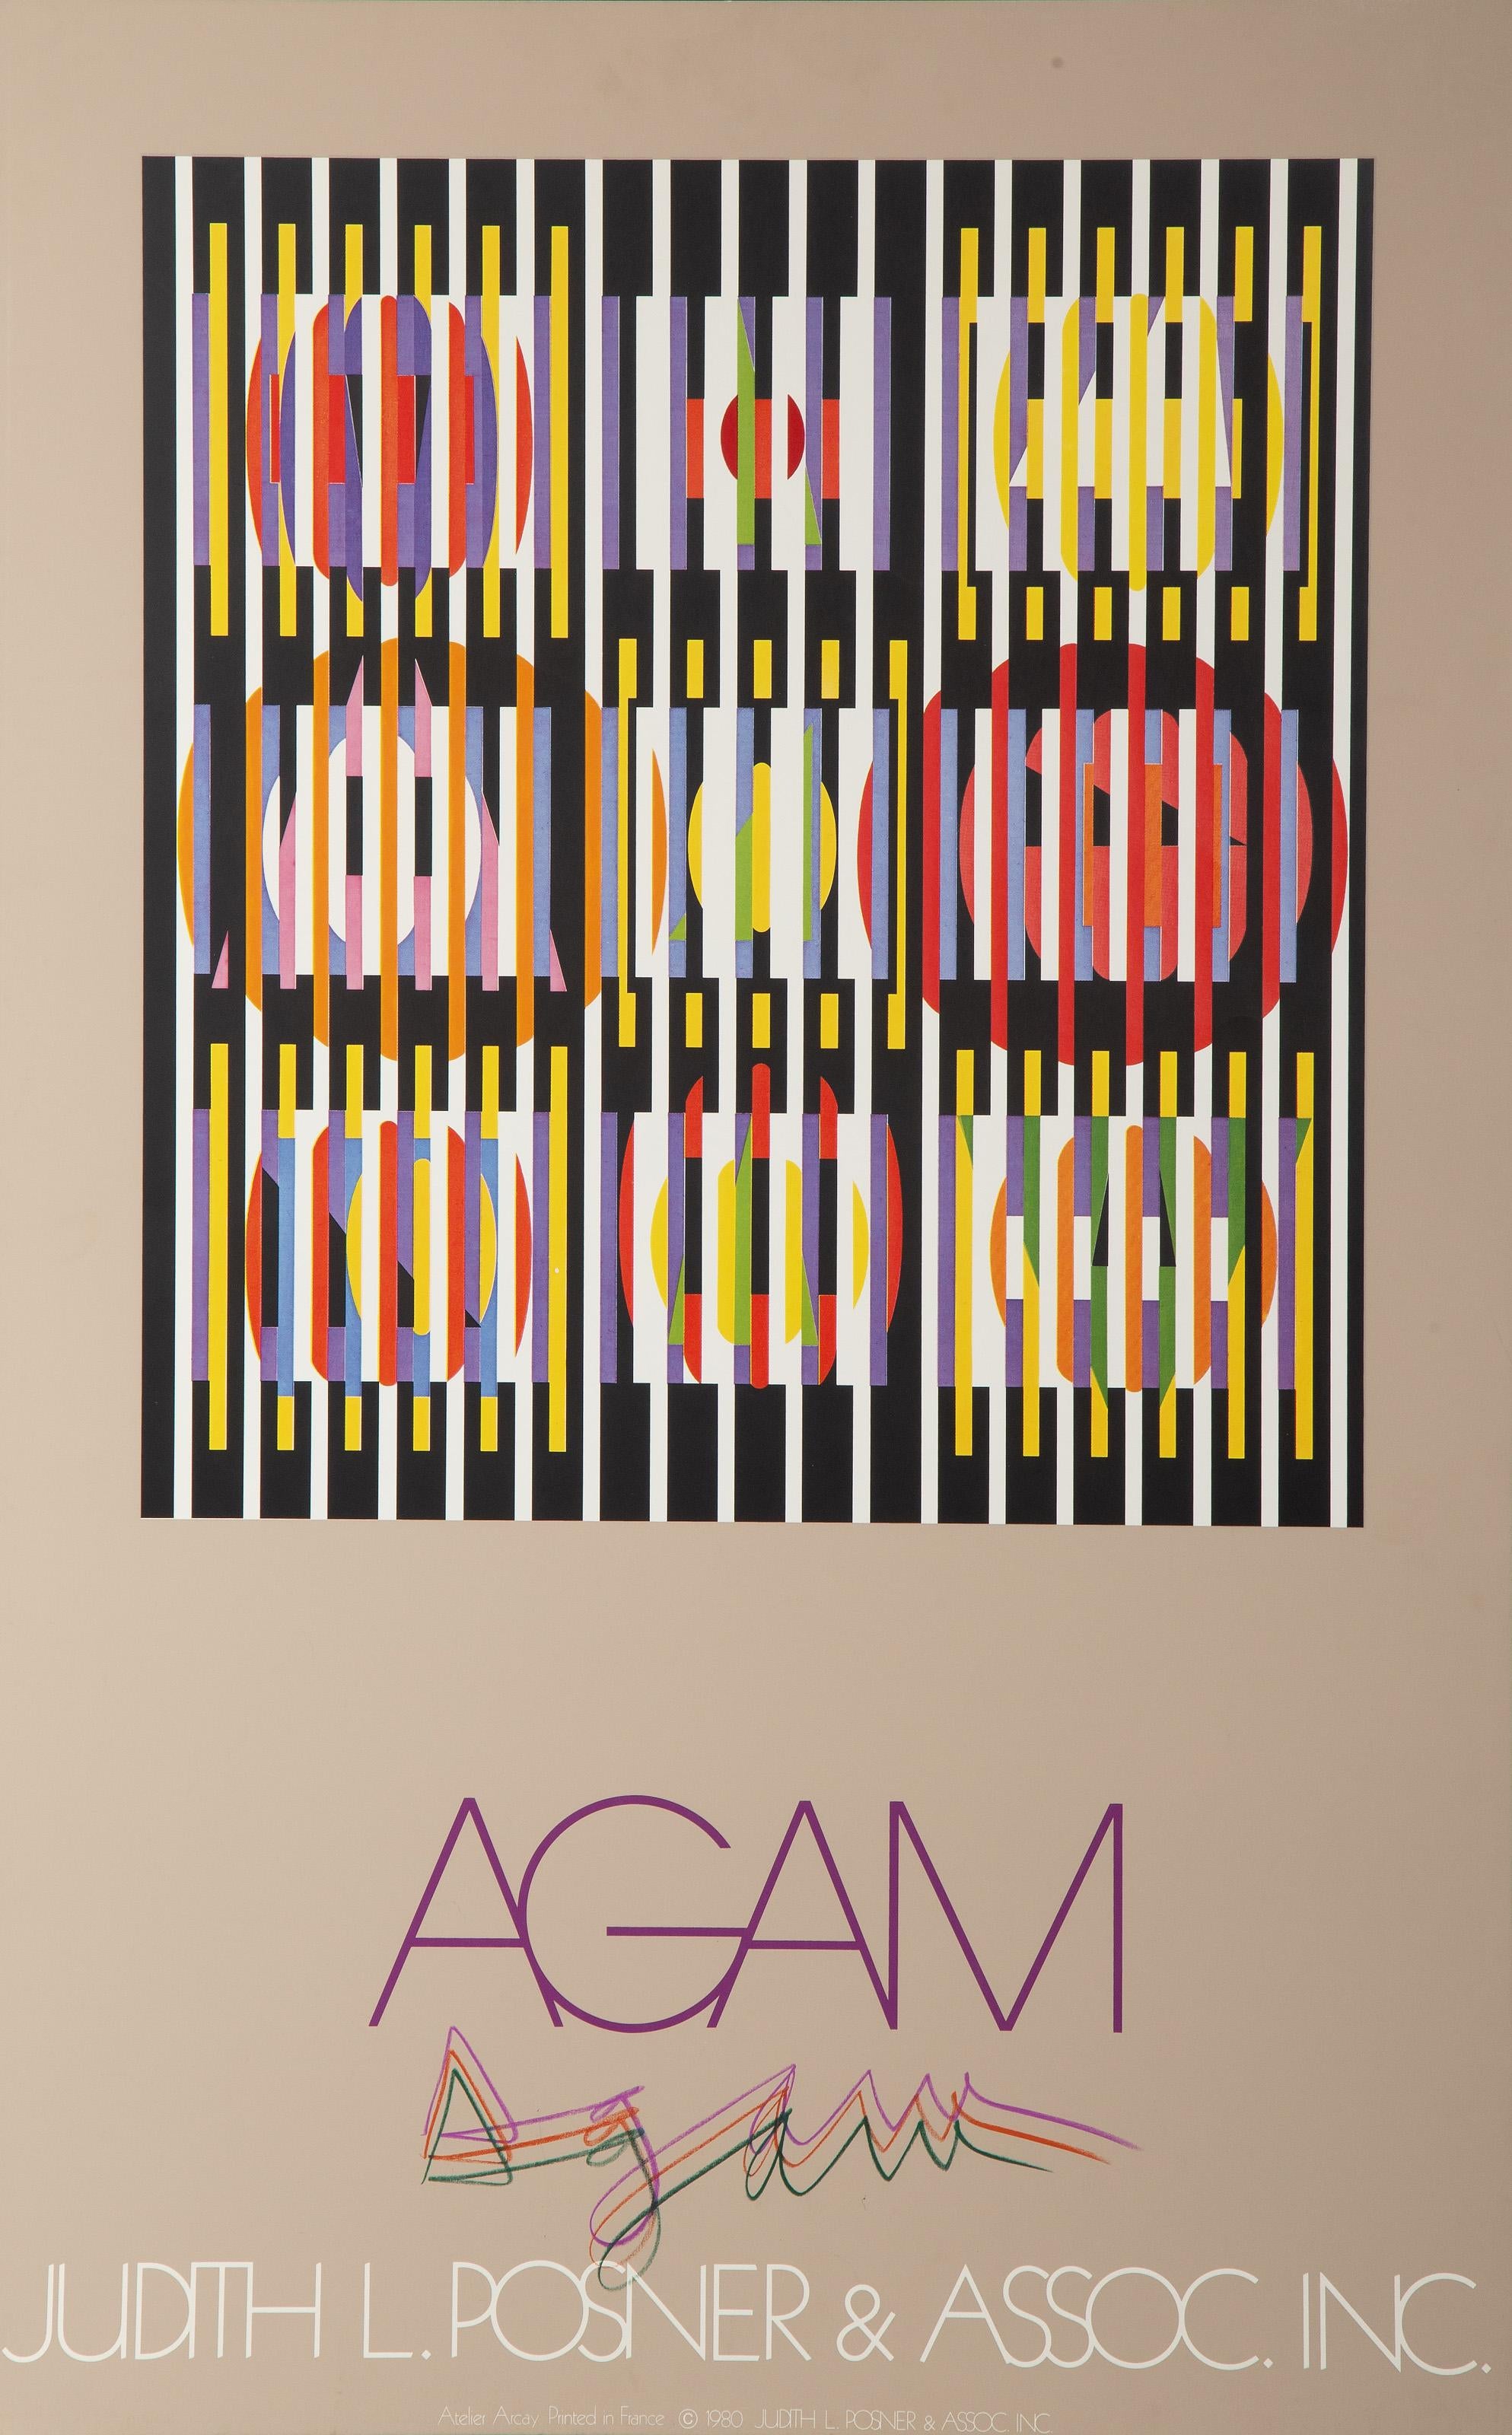 Poster de Judith L.A. et de l'Association
Yaacov Agam, Israélien (1928)
Date : 1980
Poster sérigraphié, signature unique au crayon de couleur
Taille : 38 x 23.75 in. (96.52 x 60.33 cm)